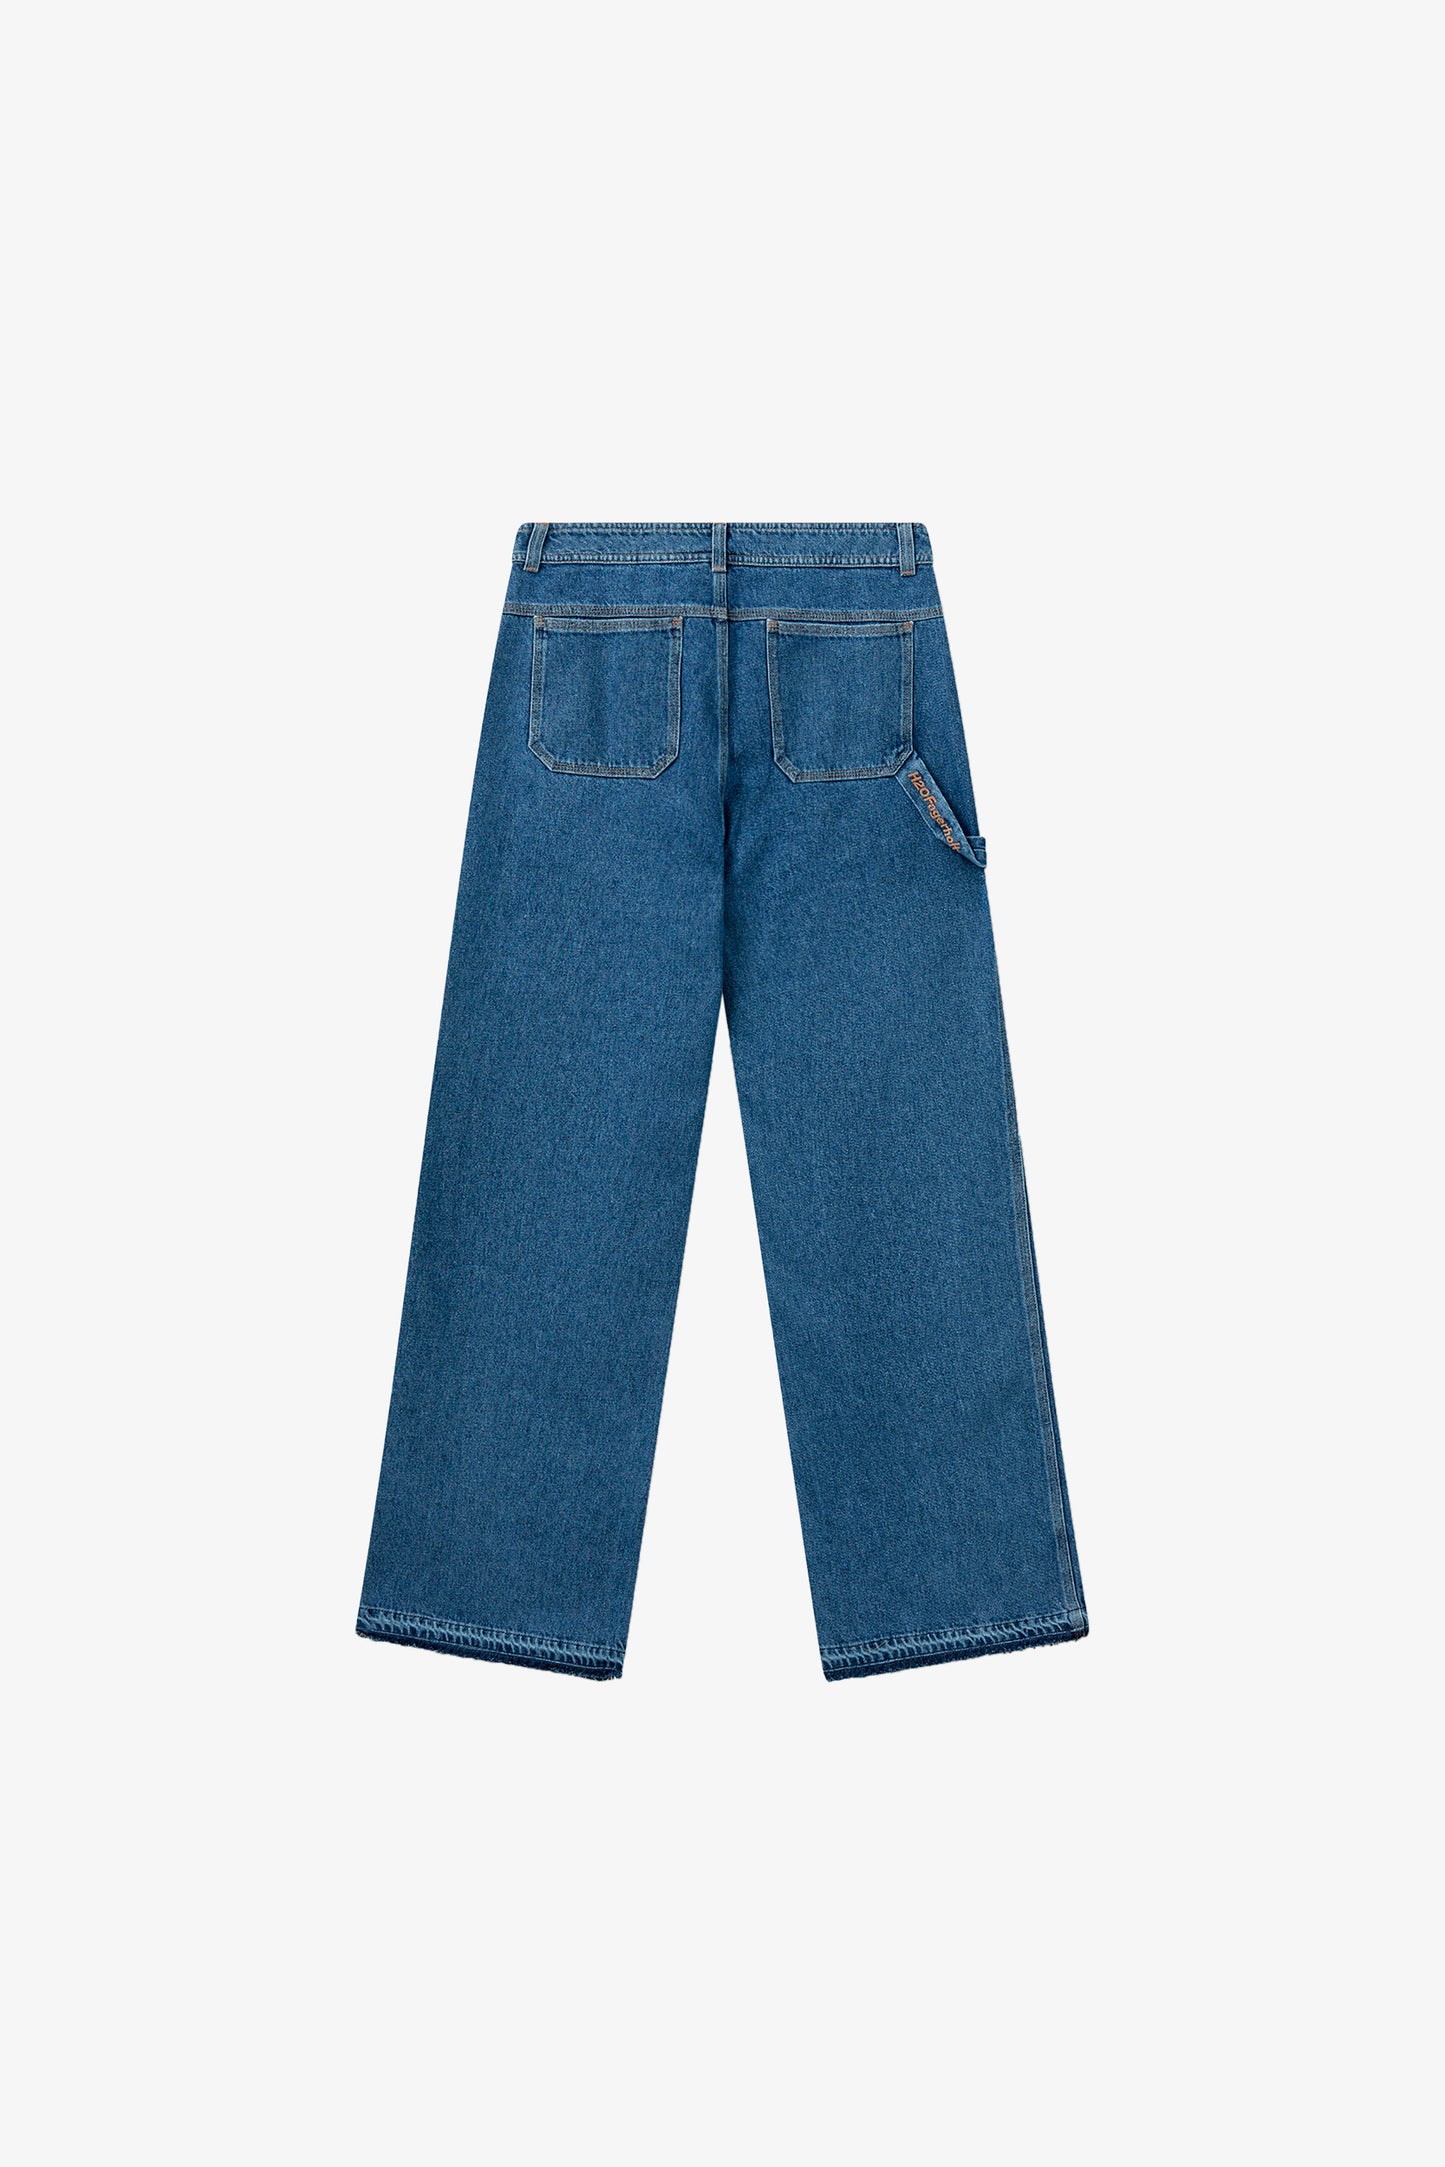 H2OFagerholt Aljinz Jeans Pants 2526 Vintage Blue Denim